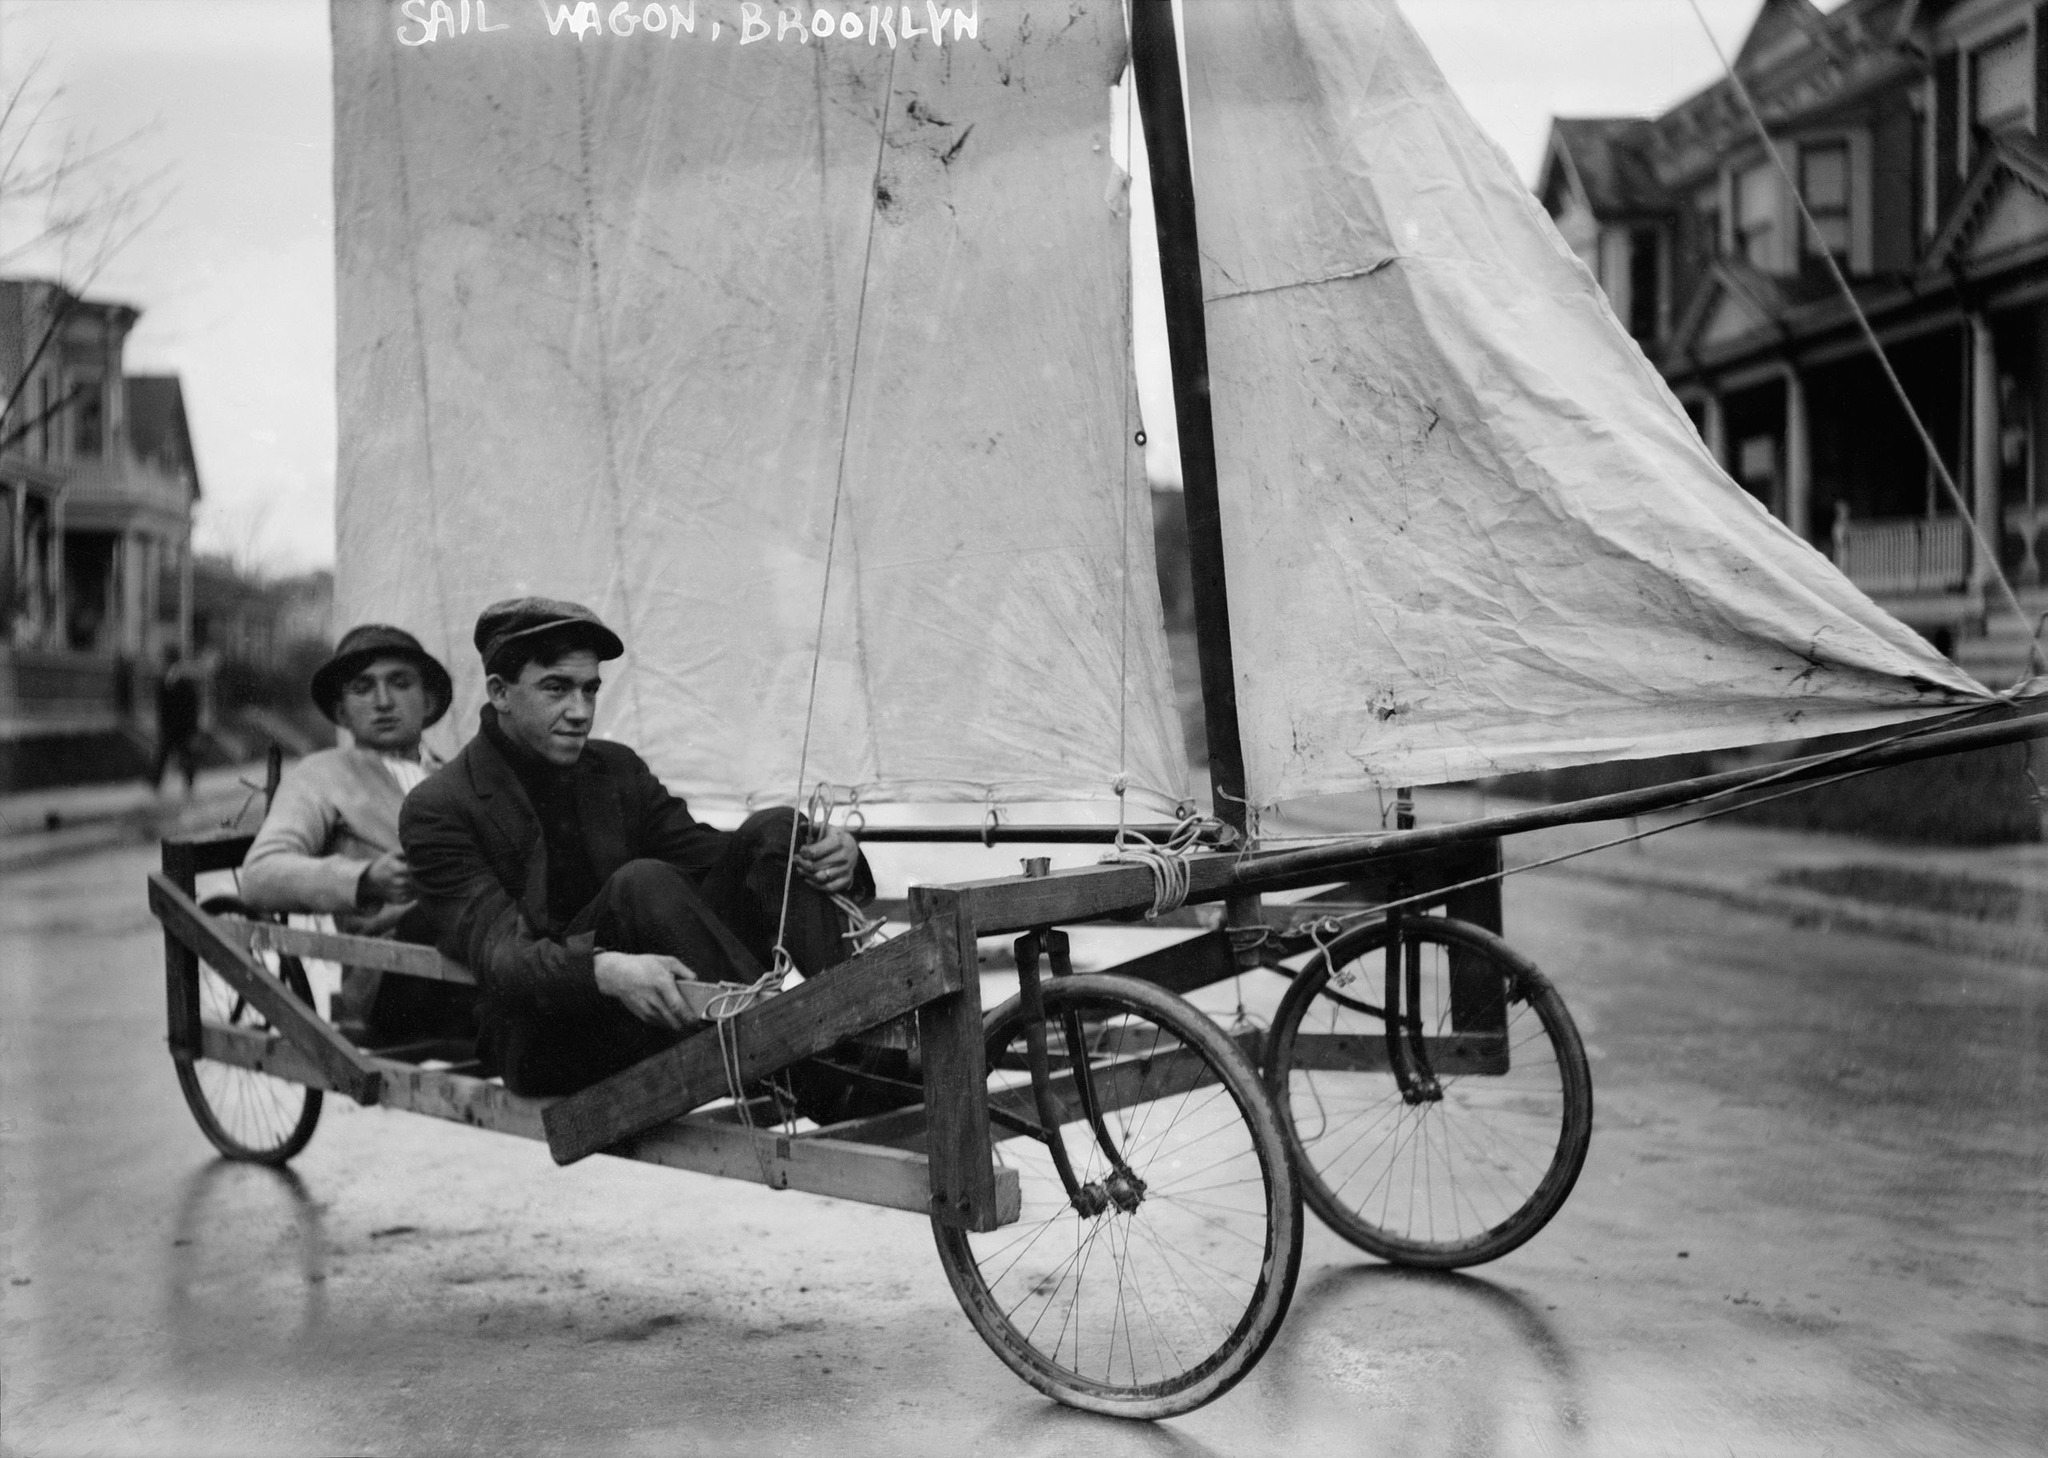 Un chariot à voile du début du 20e siècle à Brooklyn, New York